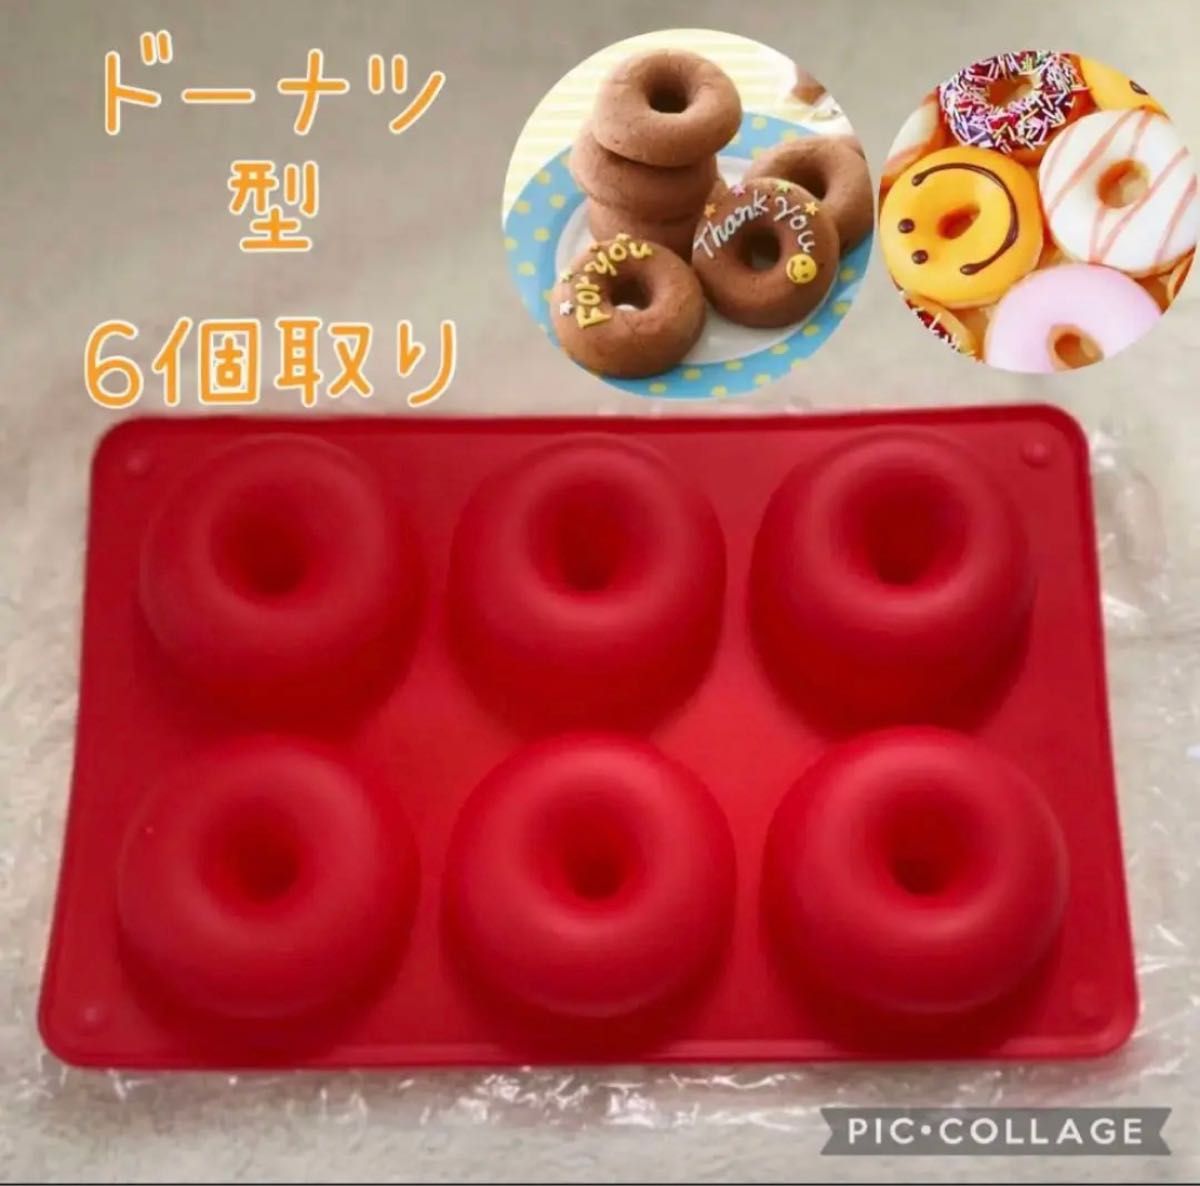 新品 お菓子作り ドーナツ型 シリコン モールド 耐熱 掃除が簡単 キッチン